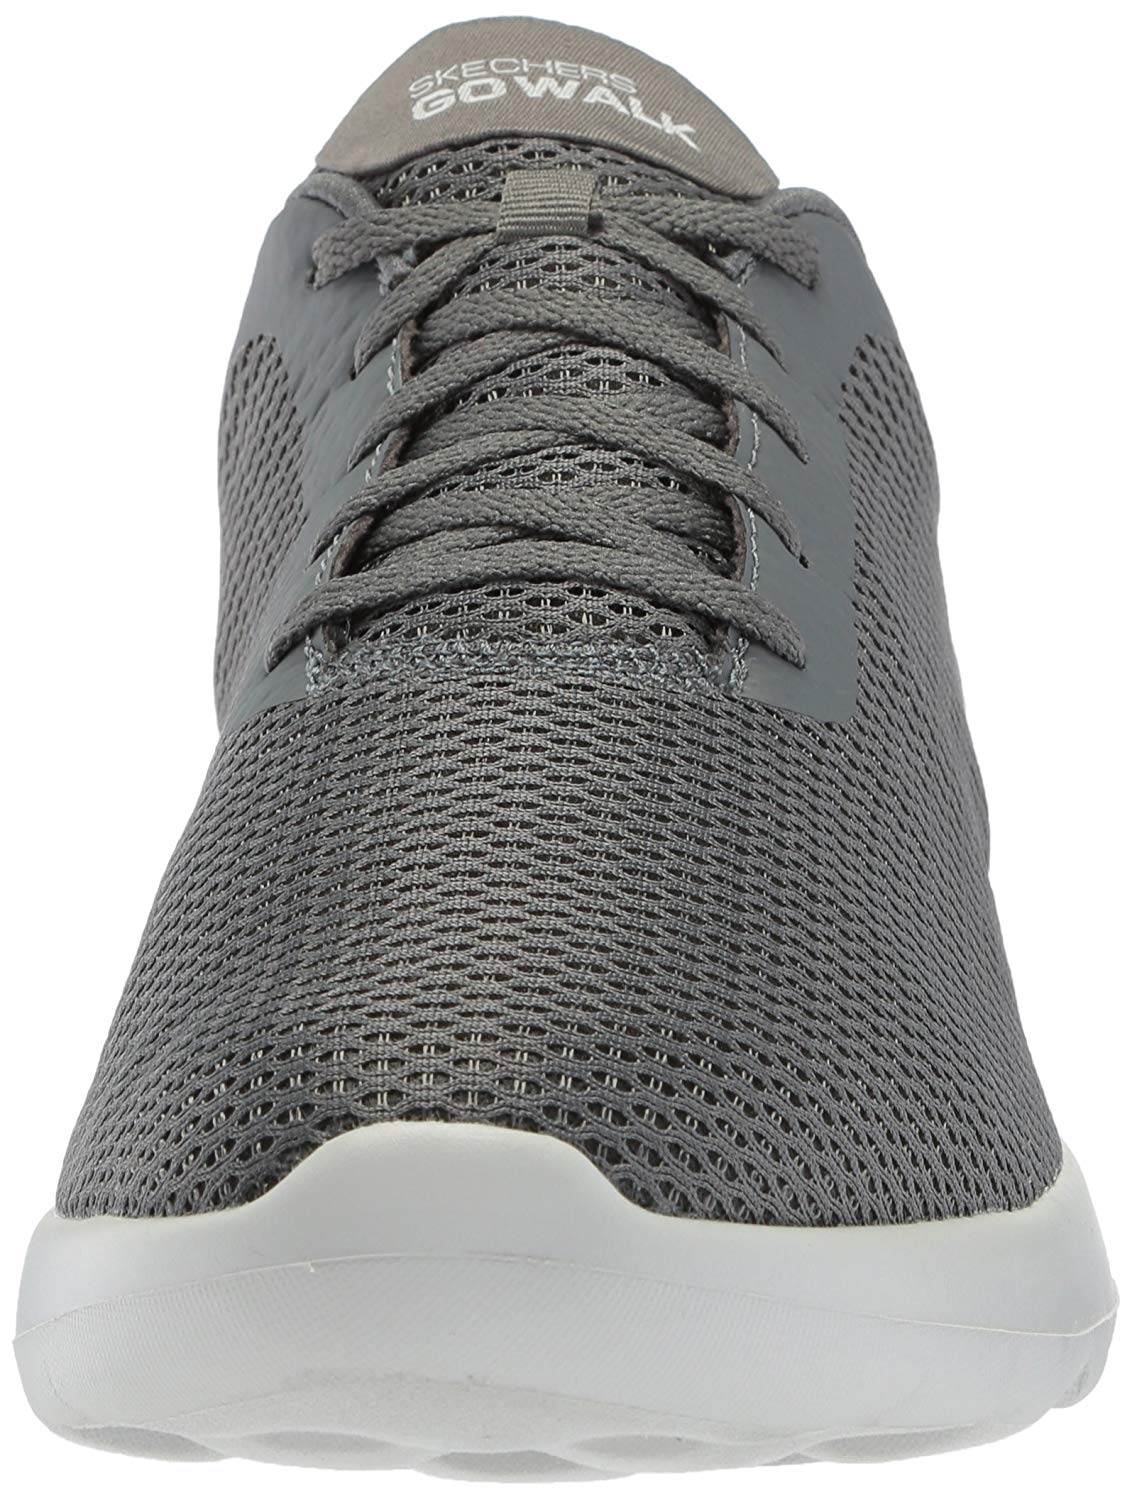 Skechers Men's Go Walk Max-54601 Sneaker, Charcoal, Size 9.0 J2WS | eBay